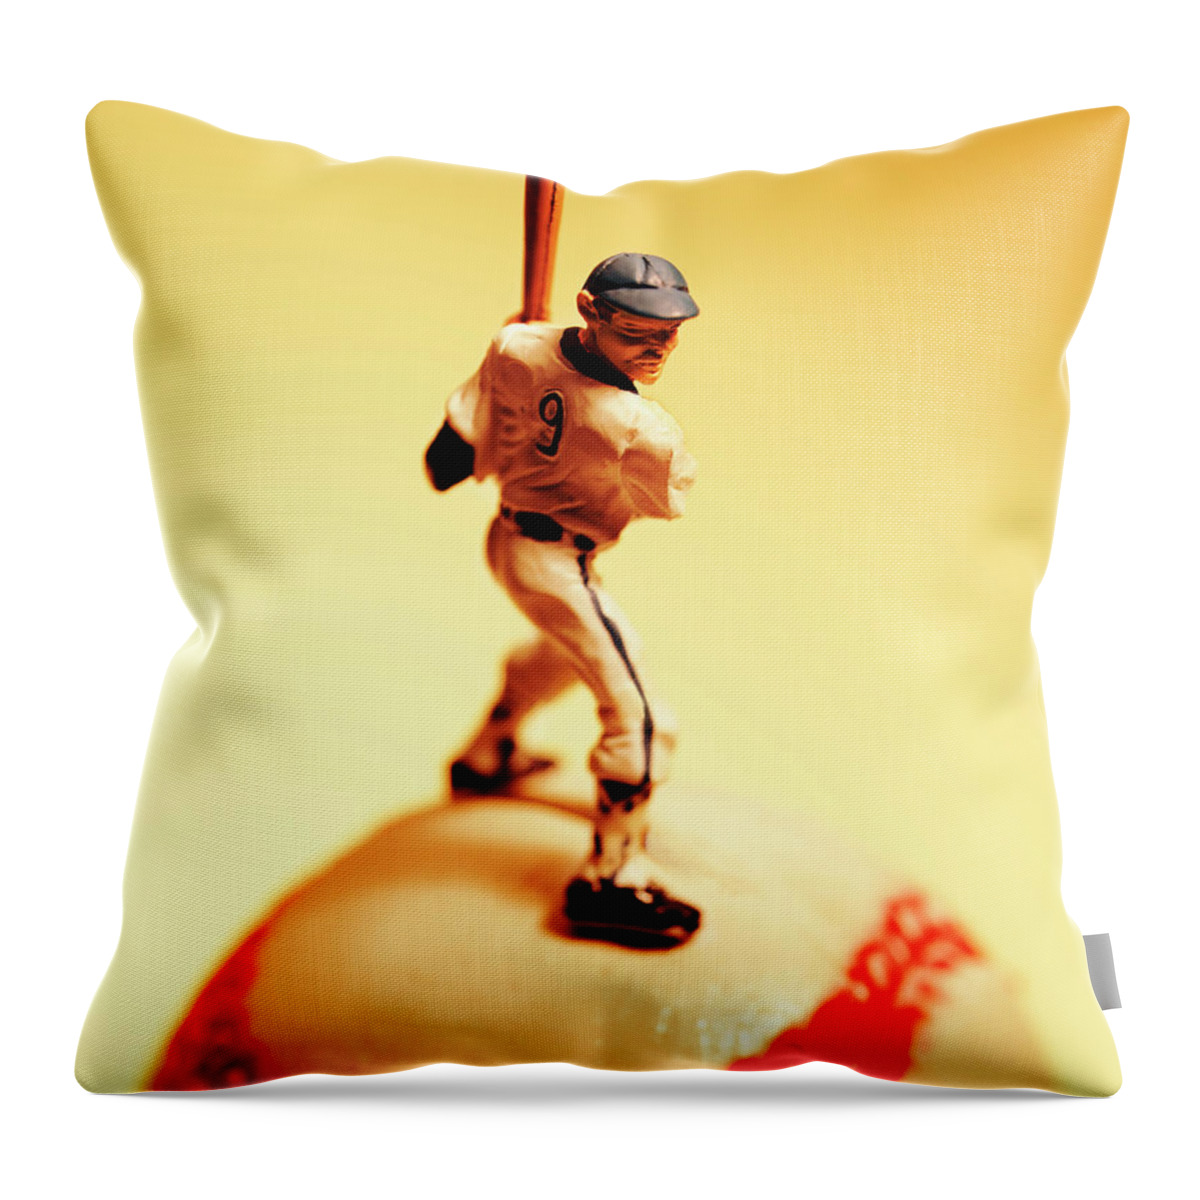 Baseball Player on Giant Baseball Throw Pillow